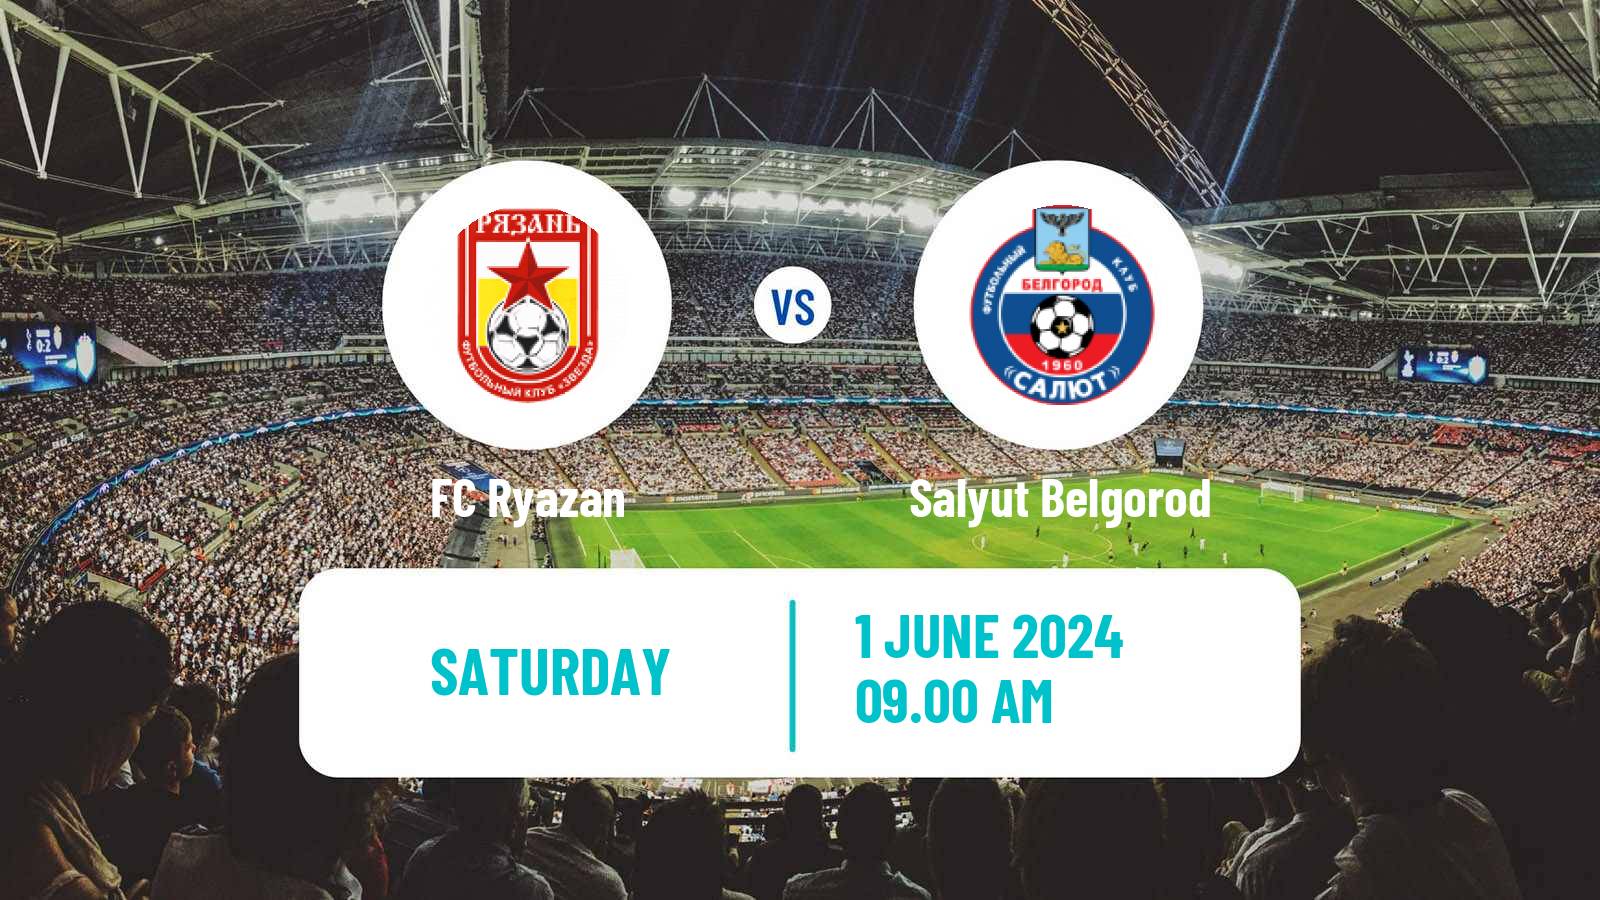 Soccer FNL 2 Division B Group 3 Ryazan - Salyut Belgorod